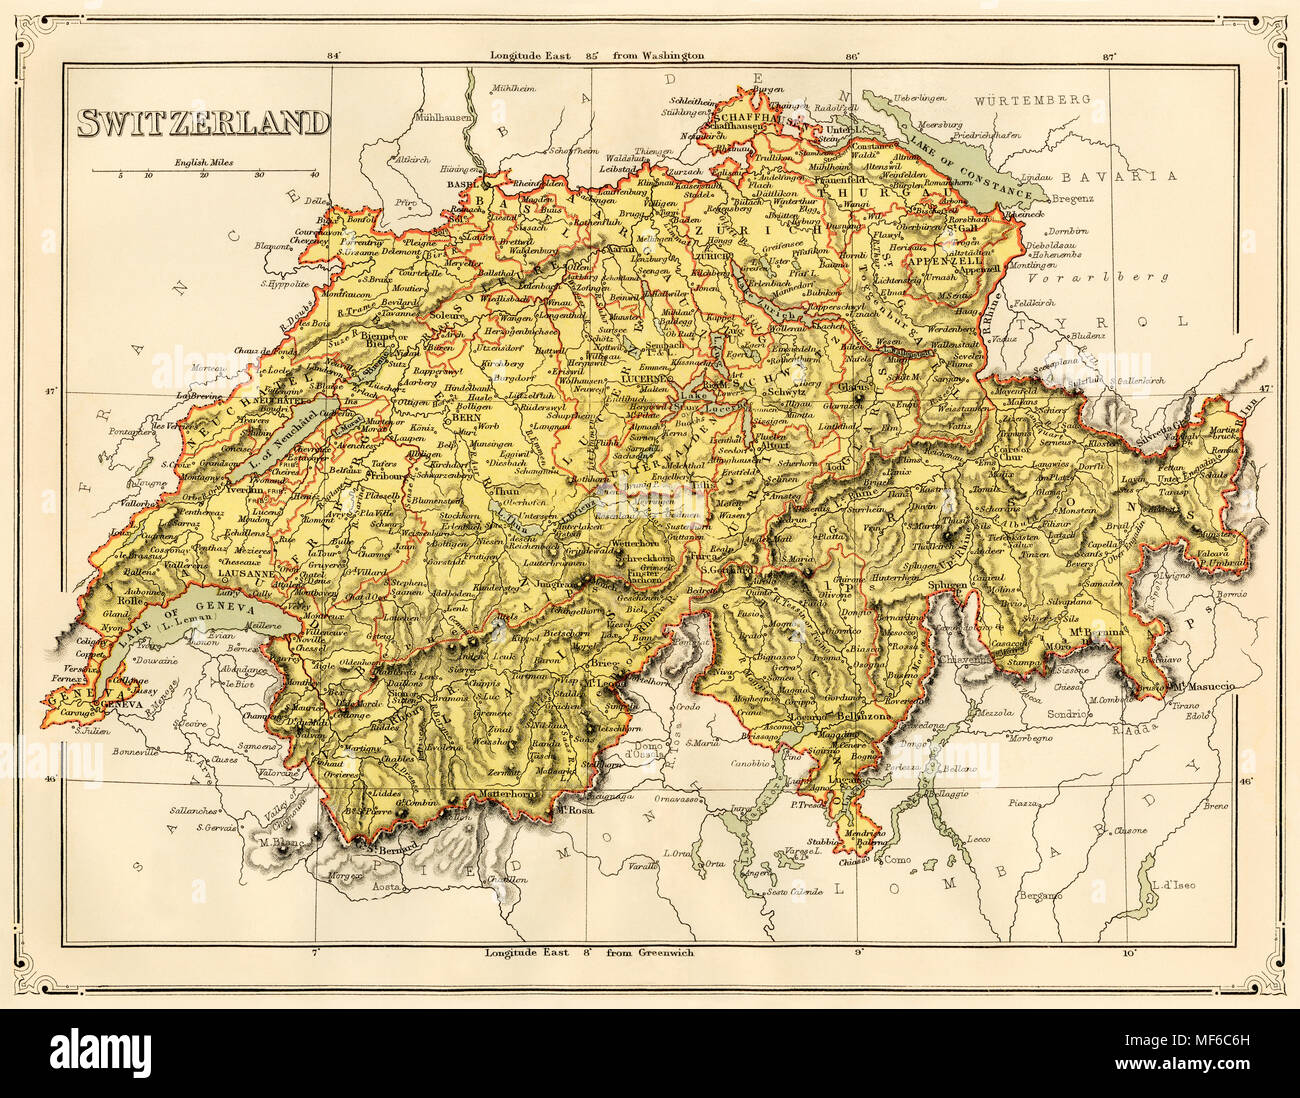 Karte der Schweiz, 1870. Gedruckte farbige Lithographie Stockfotografie -  Alamy